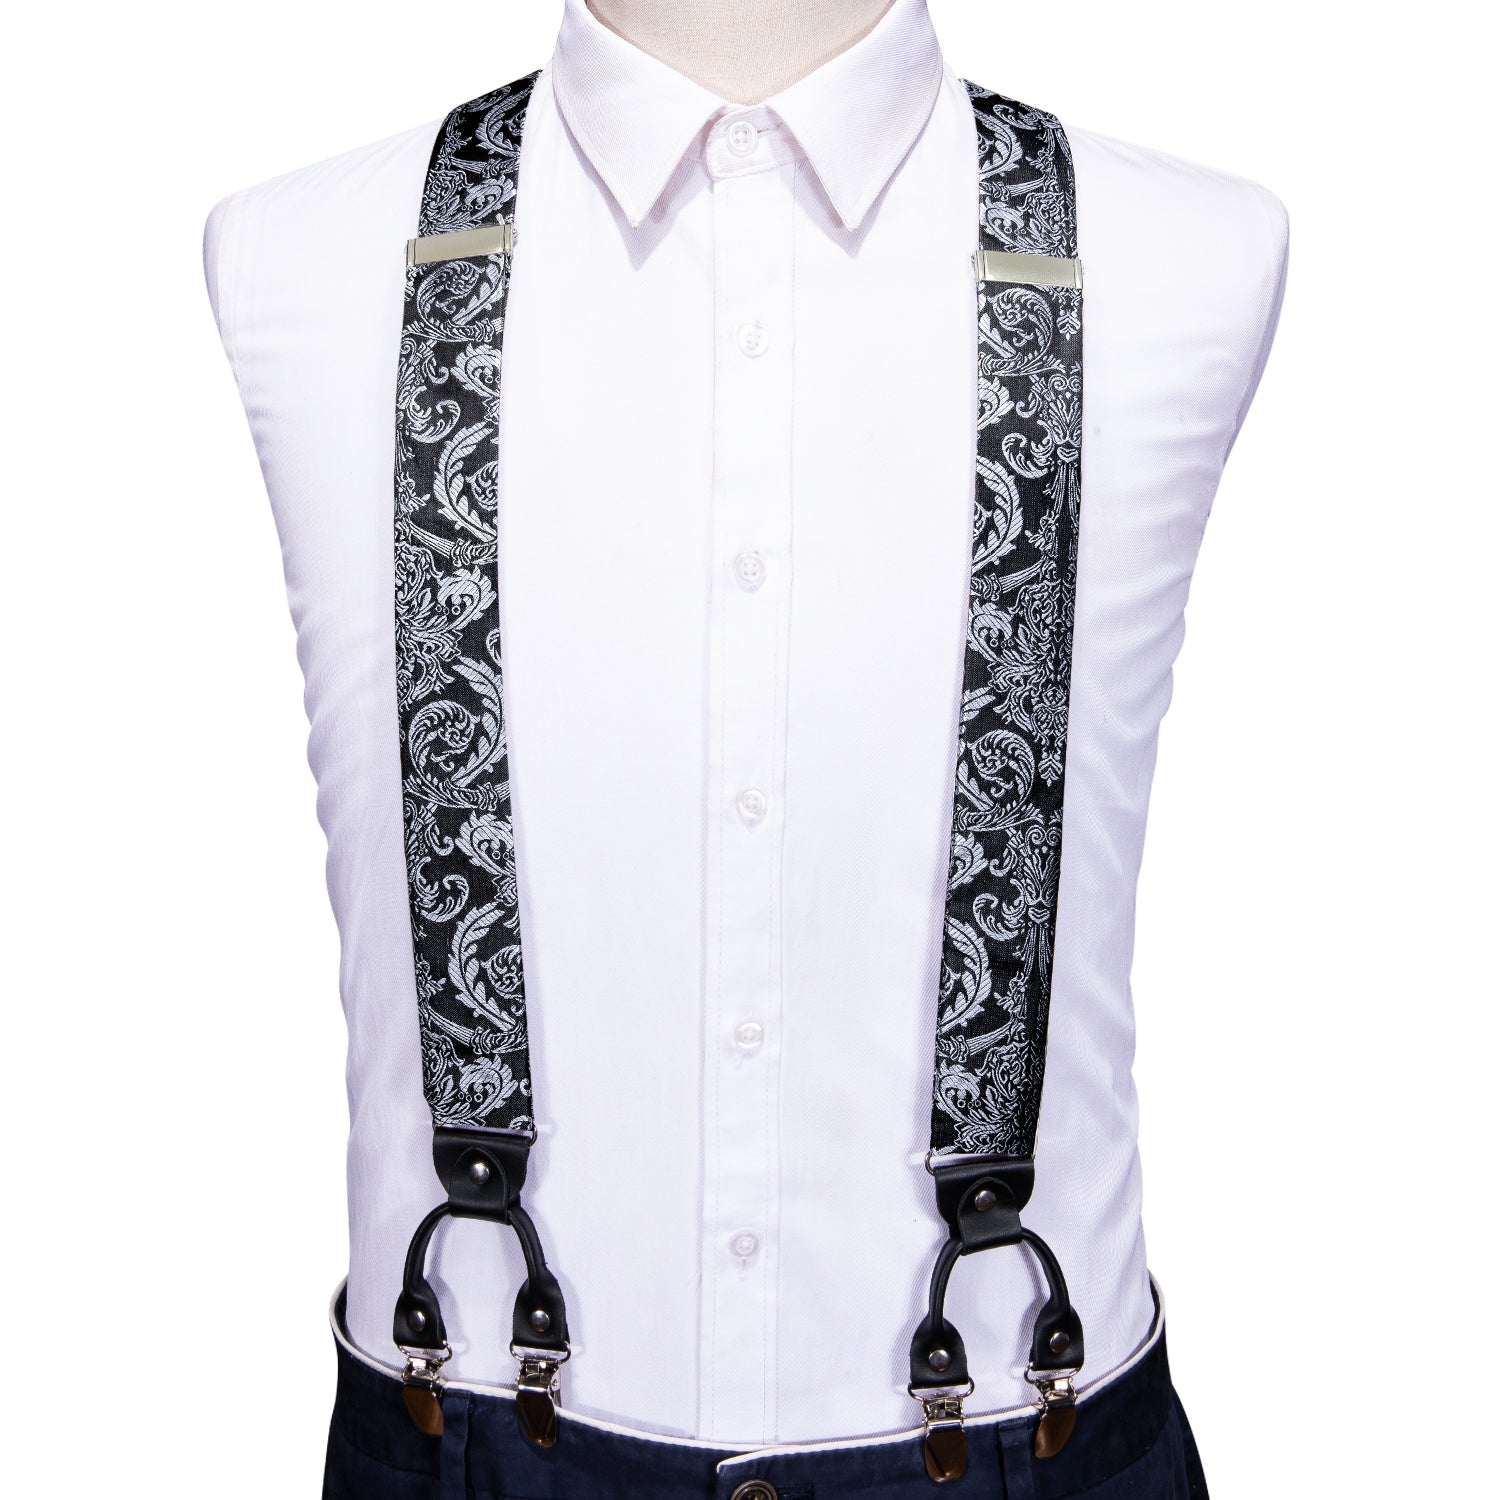 Barry.wang Black Tie Silver Y Back Adjustable Bow Tie Suspenders Set